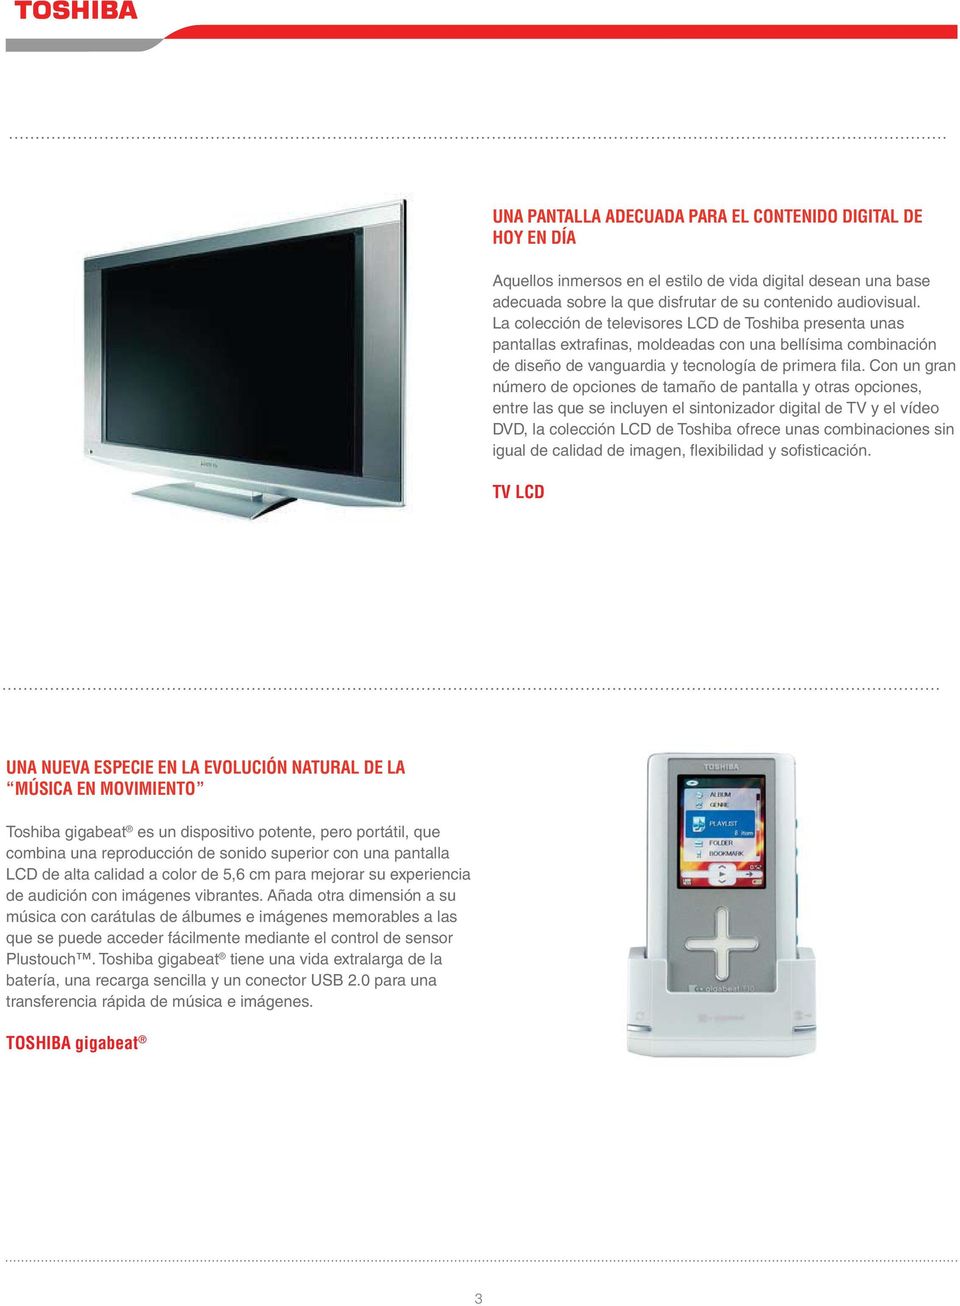 Con un gran número de opciones de tamaño de pantalla y otras opciones, entre las que se incluyen el sintonizador digital de TV y el vídeo DVD, la colección LCD de Toshiba ofrece unas combinaciones